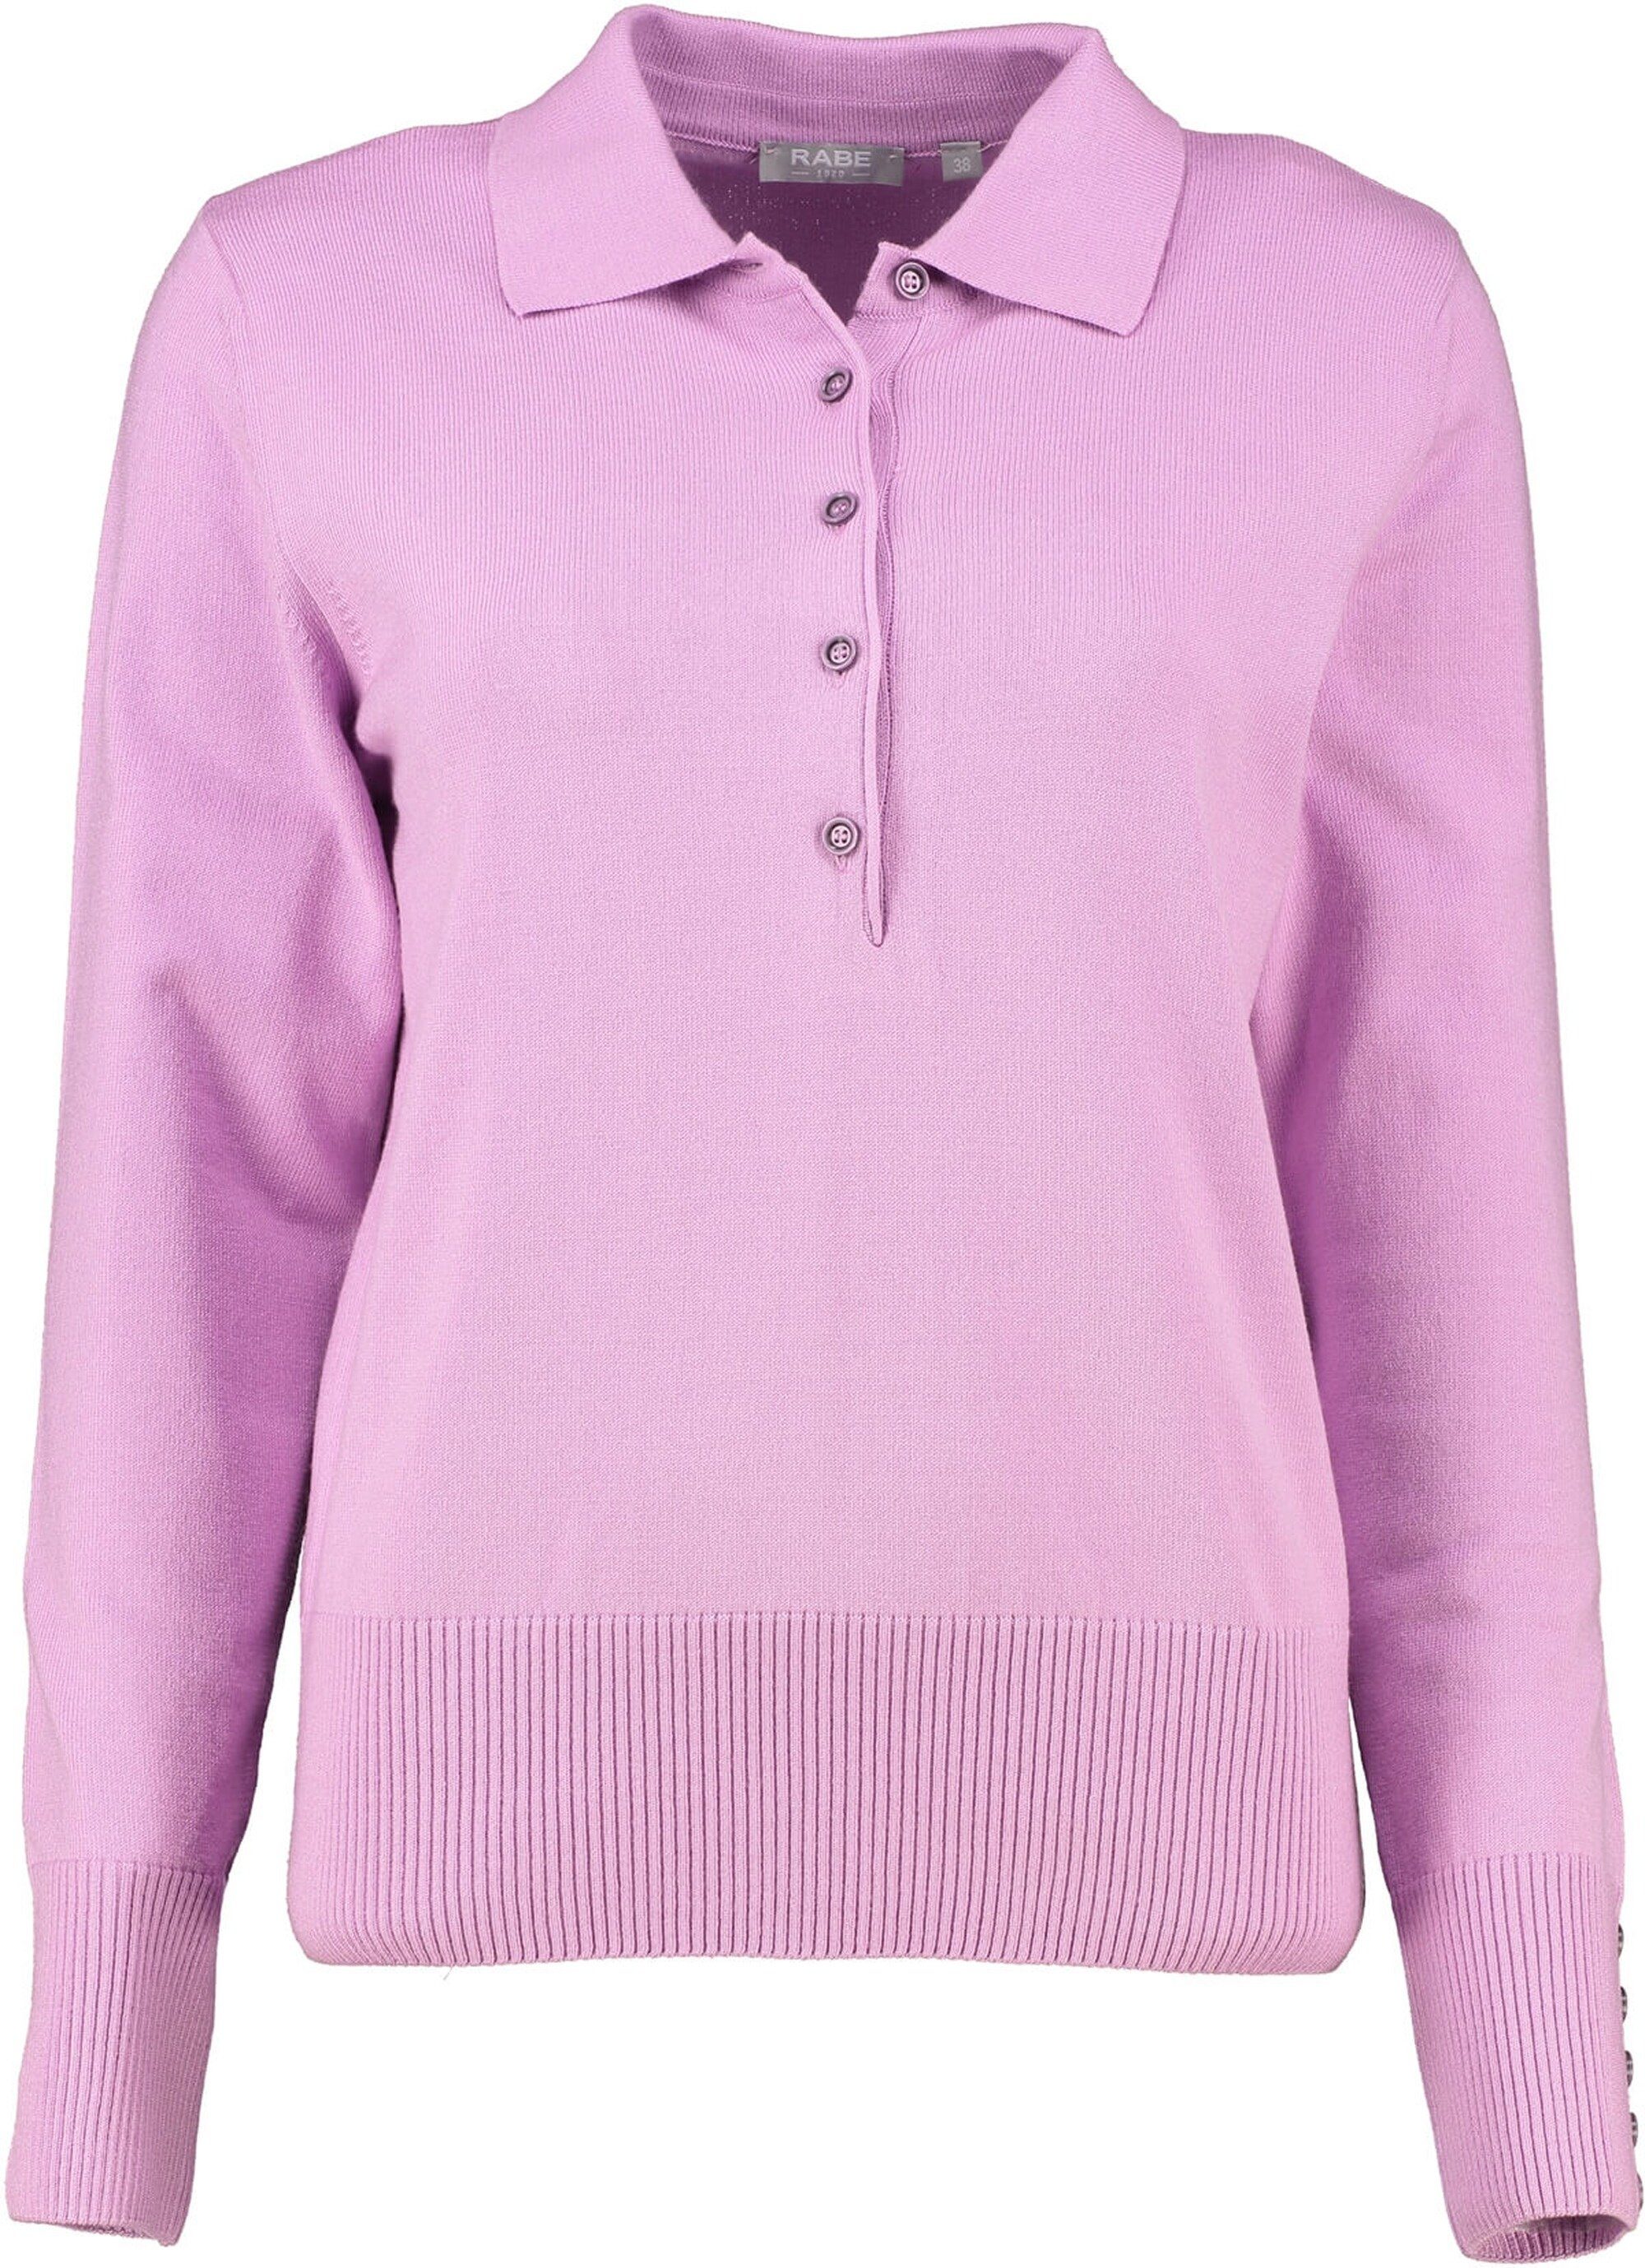 Rabe Strickpullover RABE Pullover violett in einzigartiger Qualität Rosa